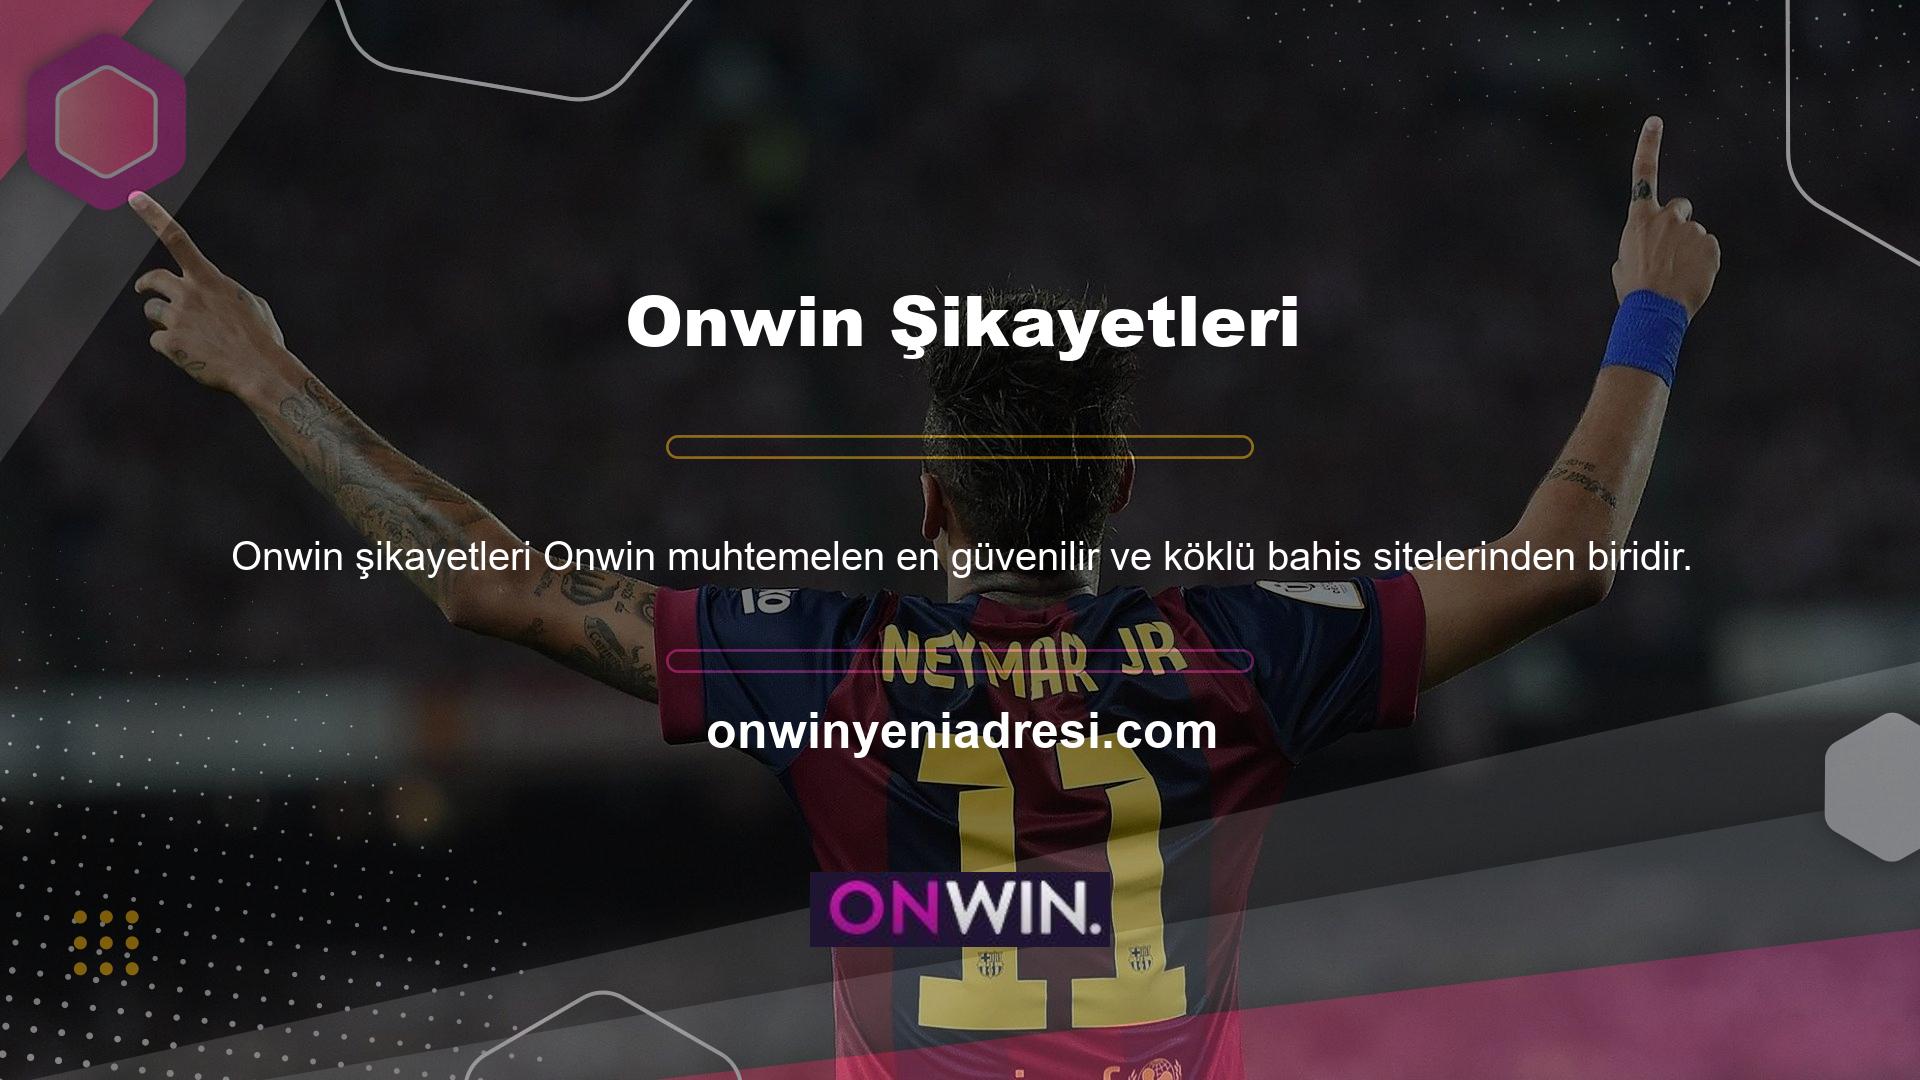 Onwin, binlerce oyuncuya dayanan bahis sektörünün en eski sitelerinden biridir